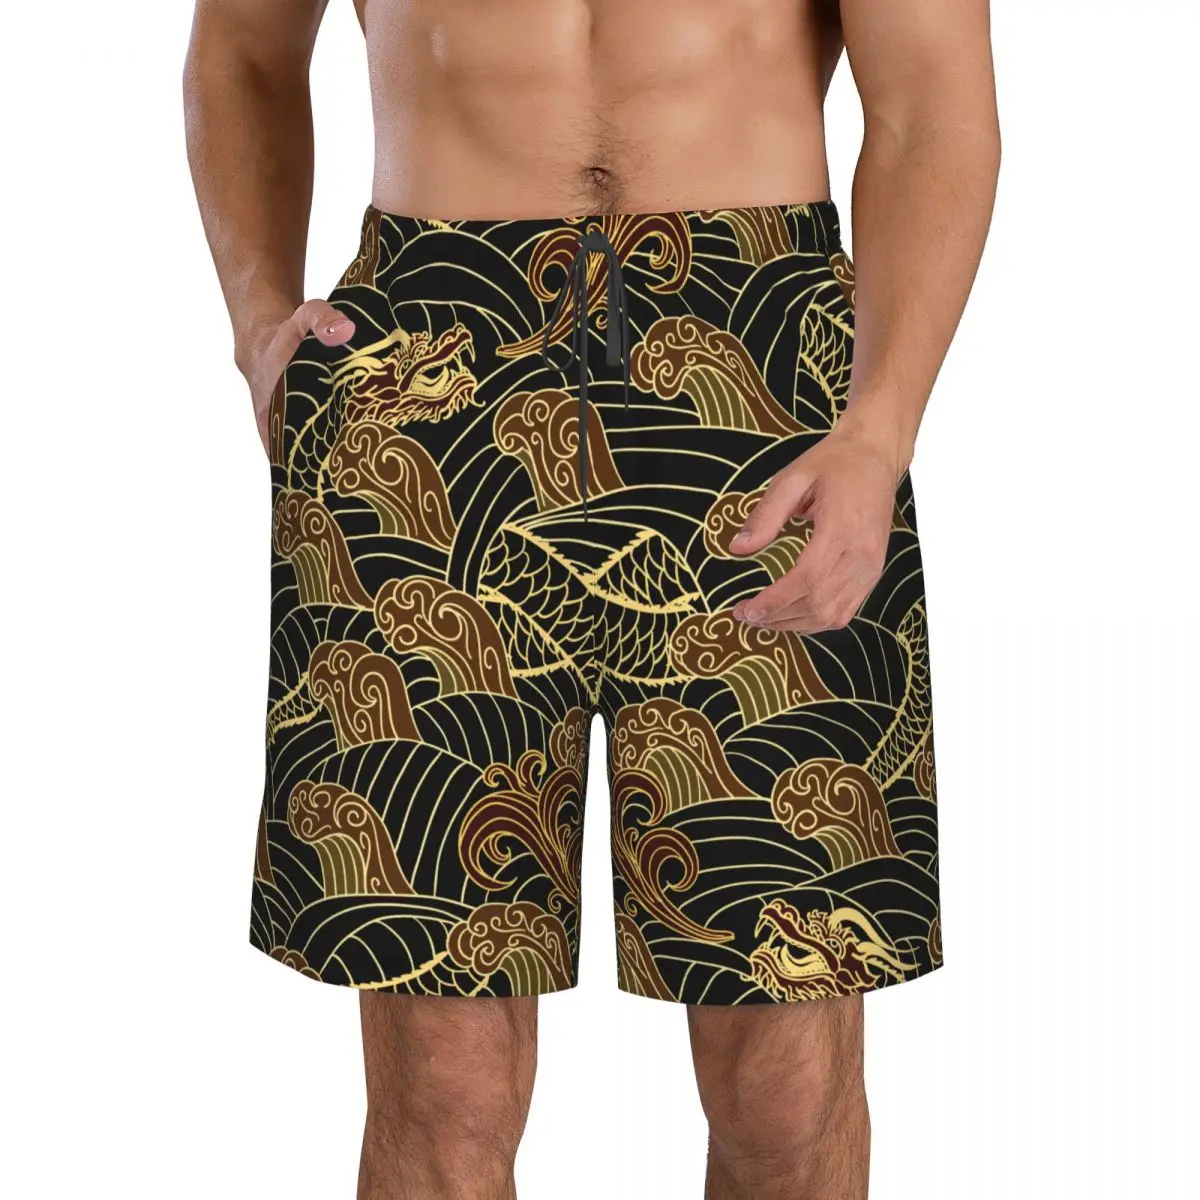 Летние мужские купальники Шорты Традиционная пляжная одежда Dragon Плавки Мужской купальник Изображение 1